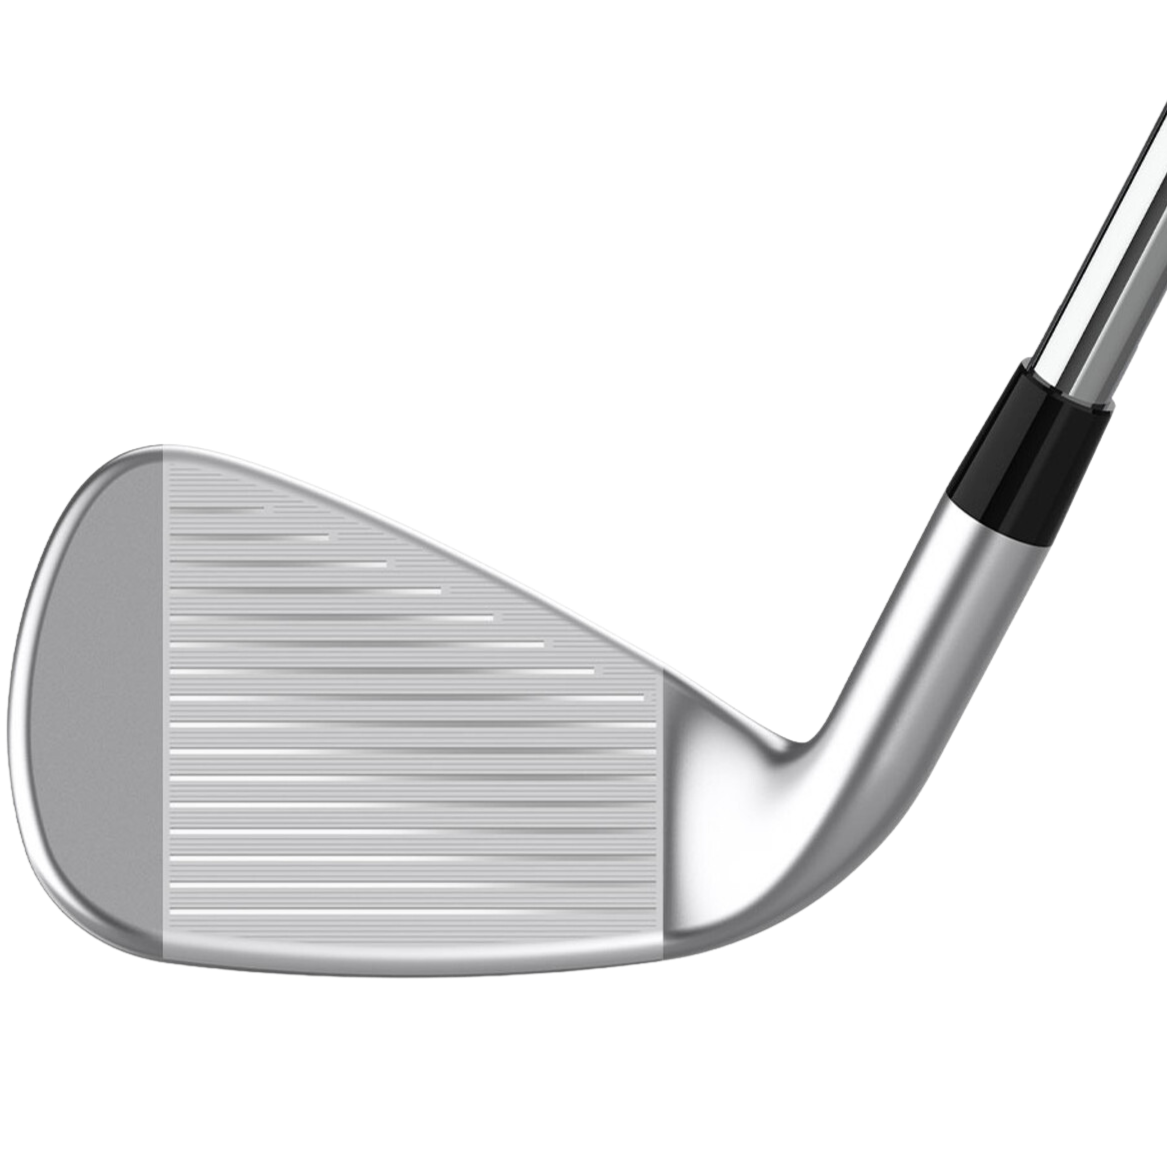 Cleveland Golf Launcher UHX Iron Set